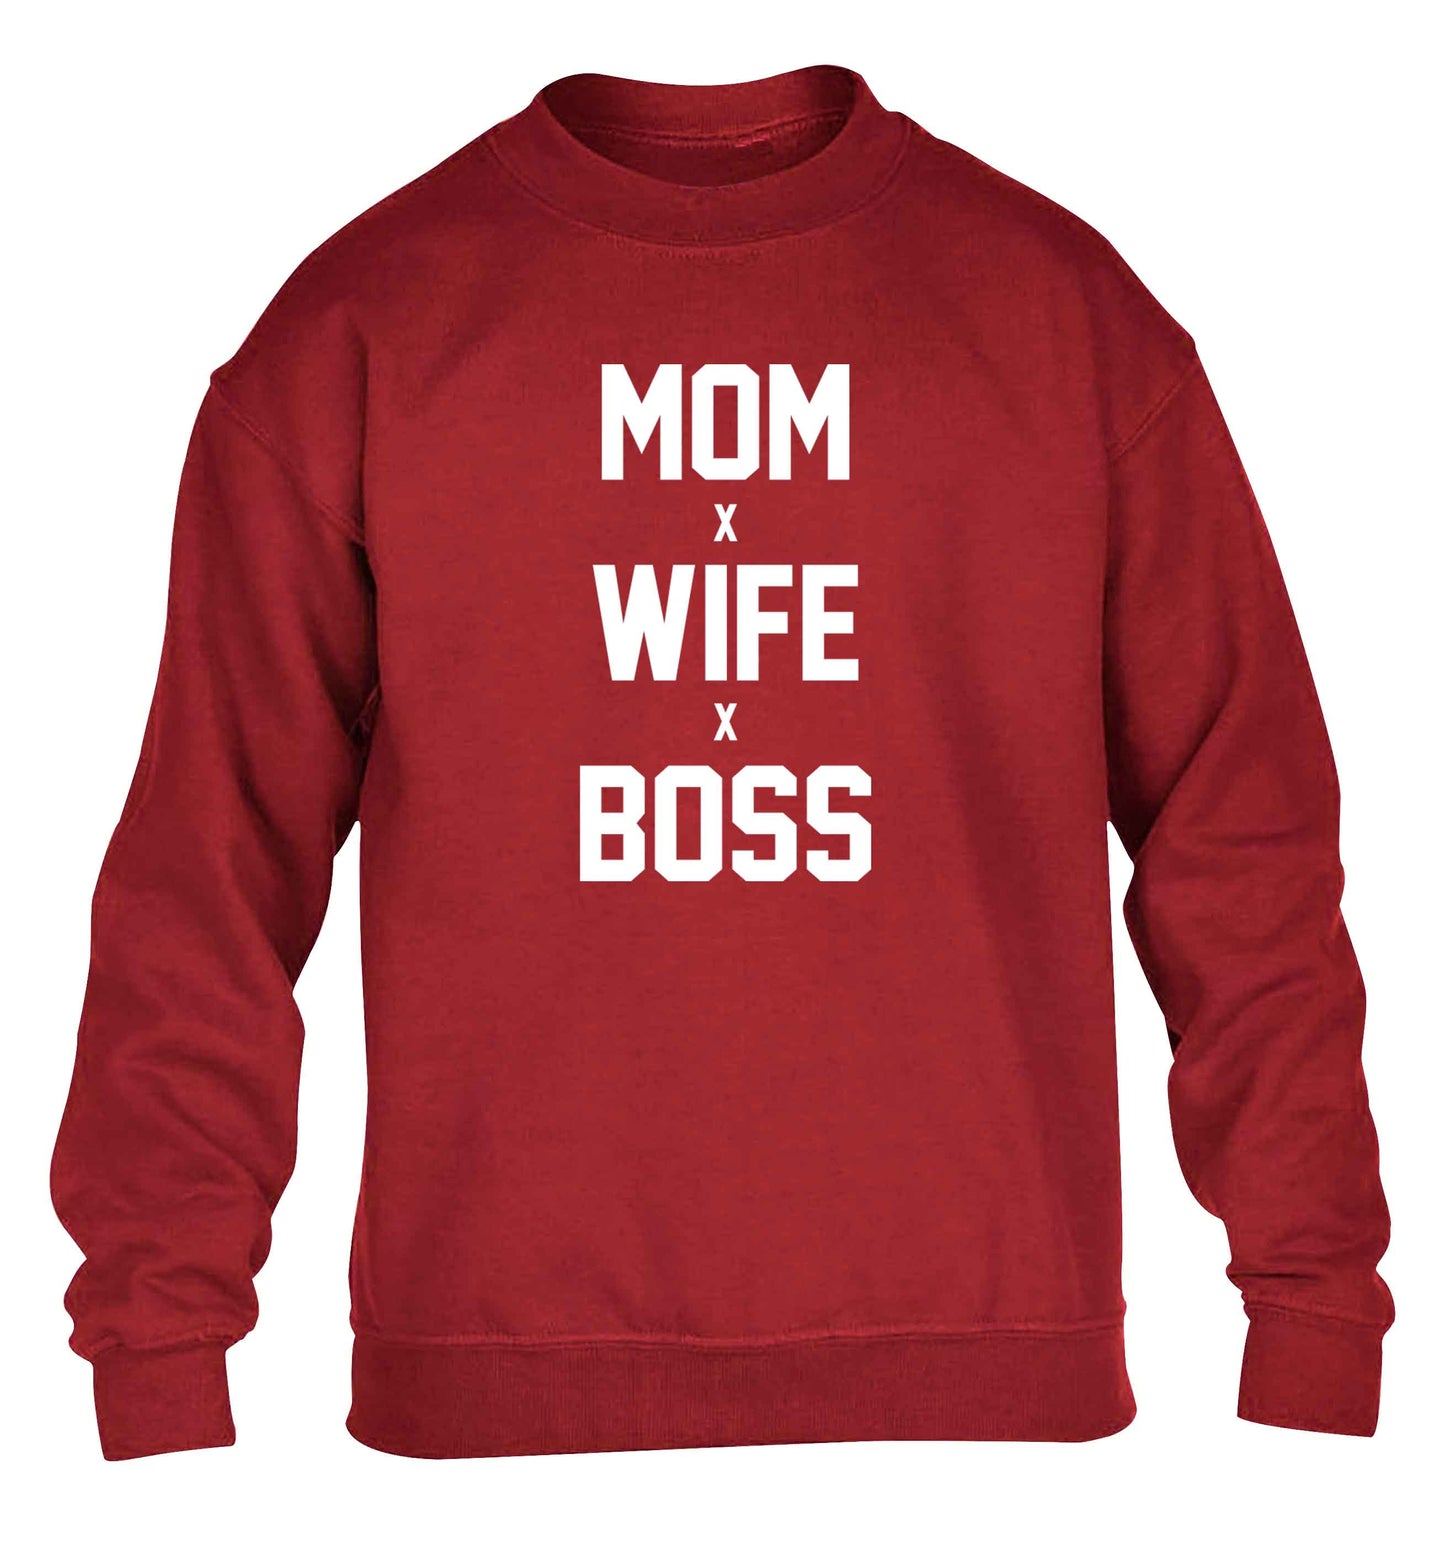 Mum wife boss children's grey sweater 12-13 Years